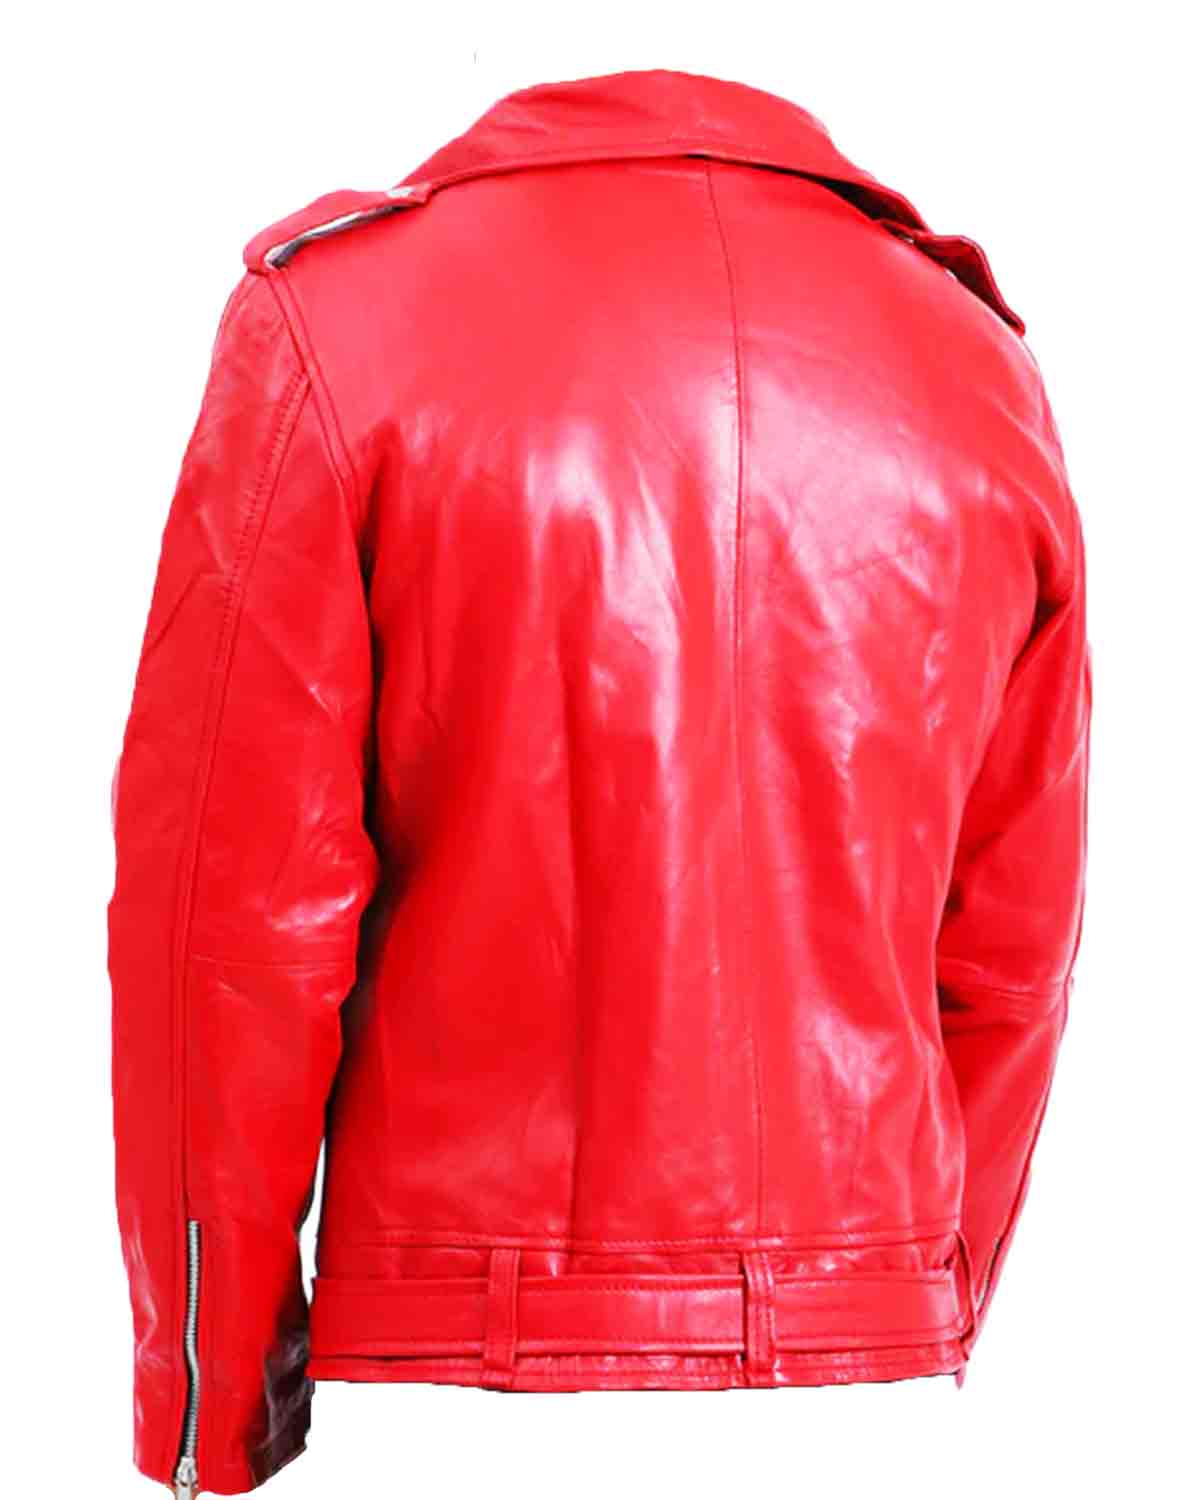 Mens Biker Negan Red Leather Jacket